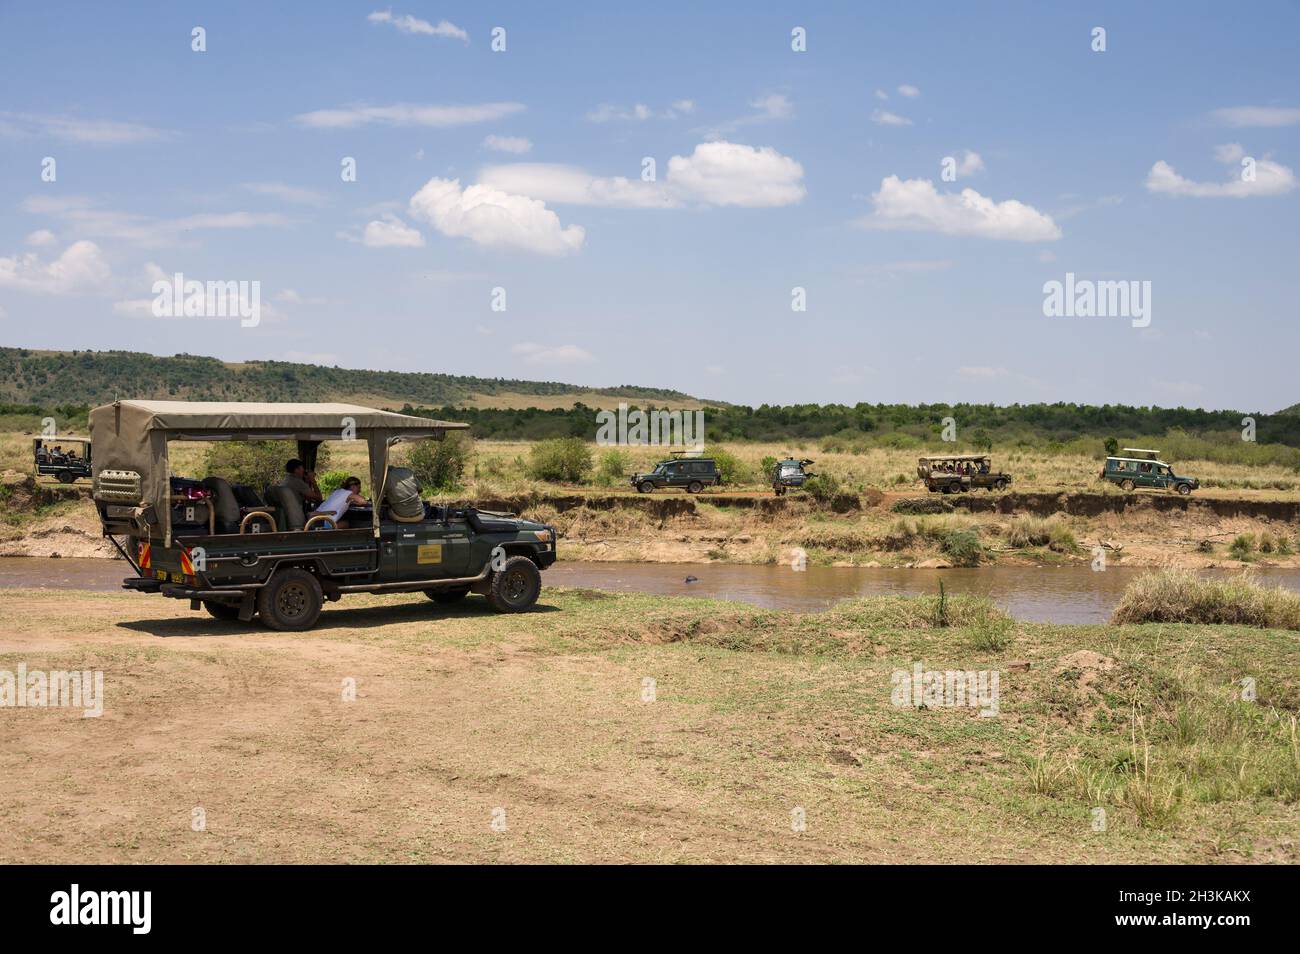 Plusieurs véhicules de safari Toyota Landcruiser 4x4 avec des touristes garés au bord de la rivière Mara attendant que des animaux traversent, Masai Mara, Kenya Banque D'Images